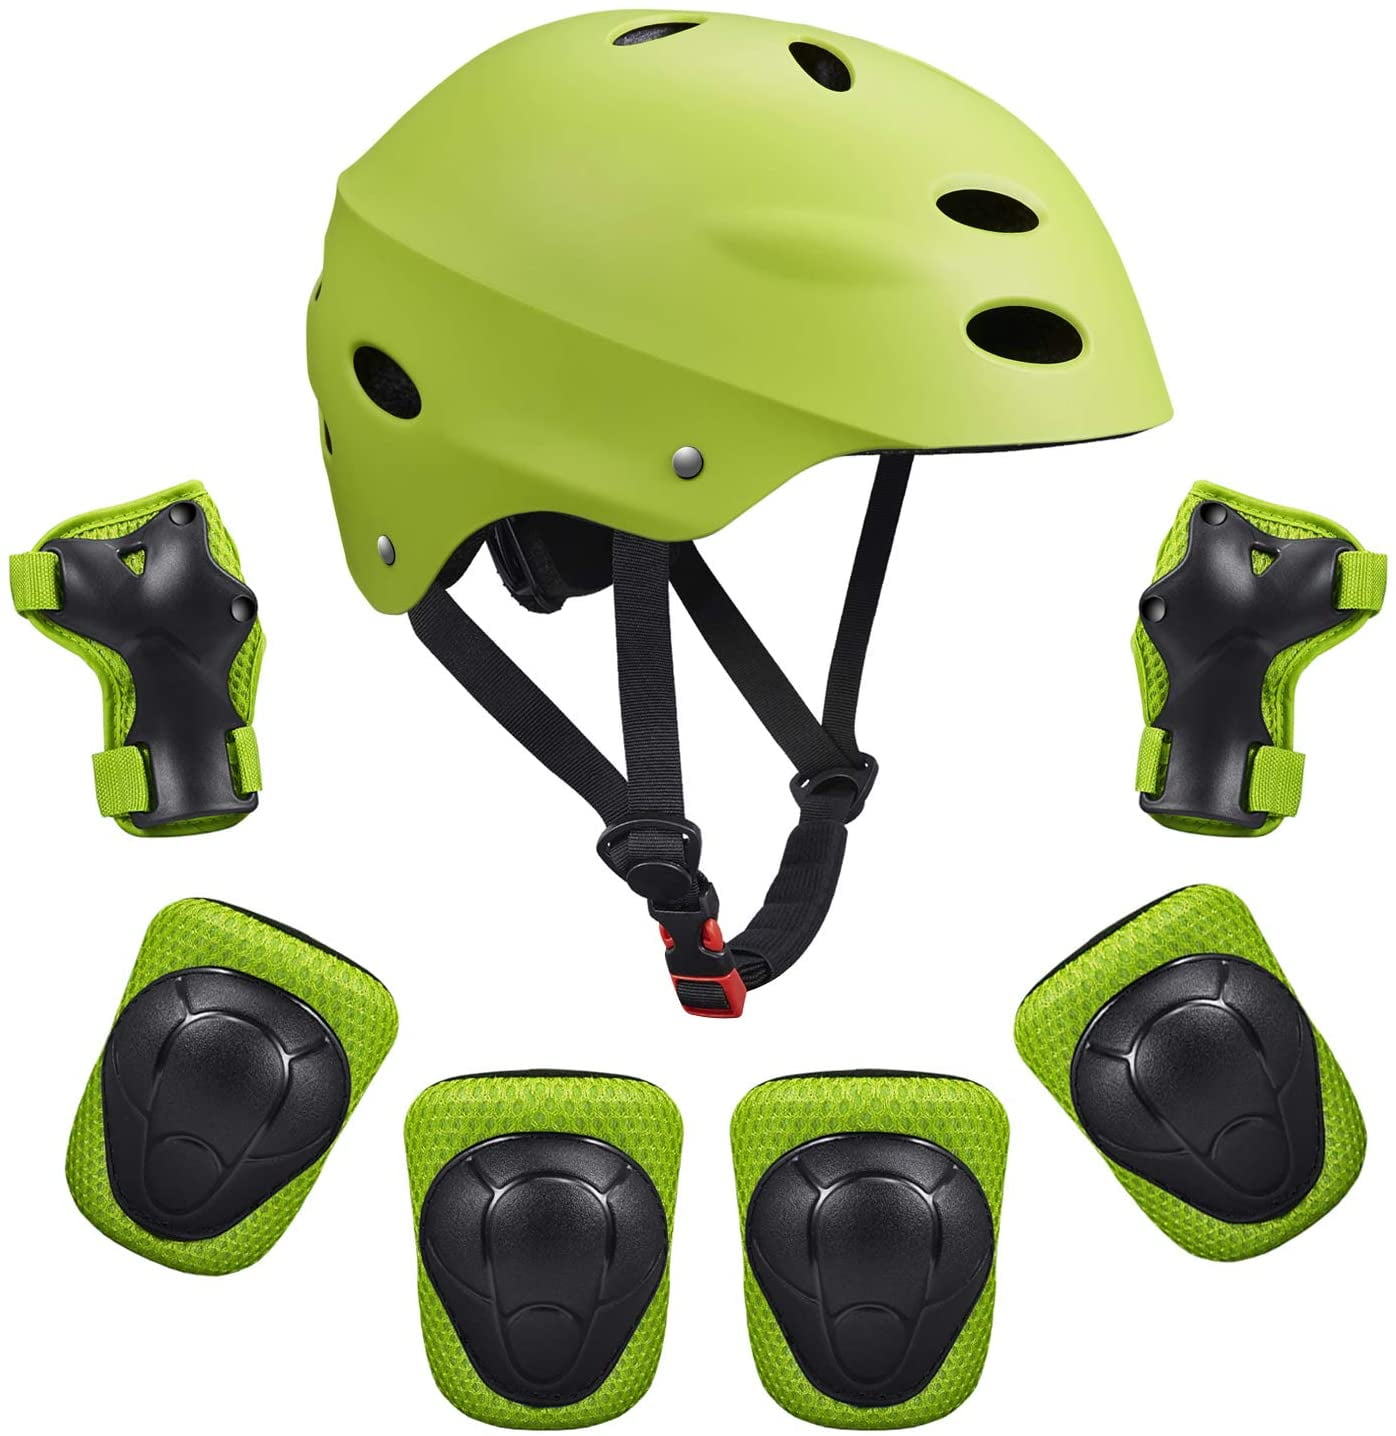 Equipment Children Helmet Knee Elbow Pad Set Kids Protective Gear Sets 